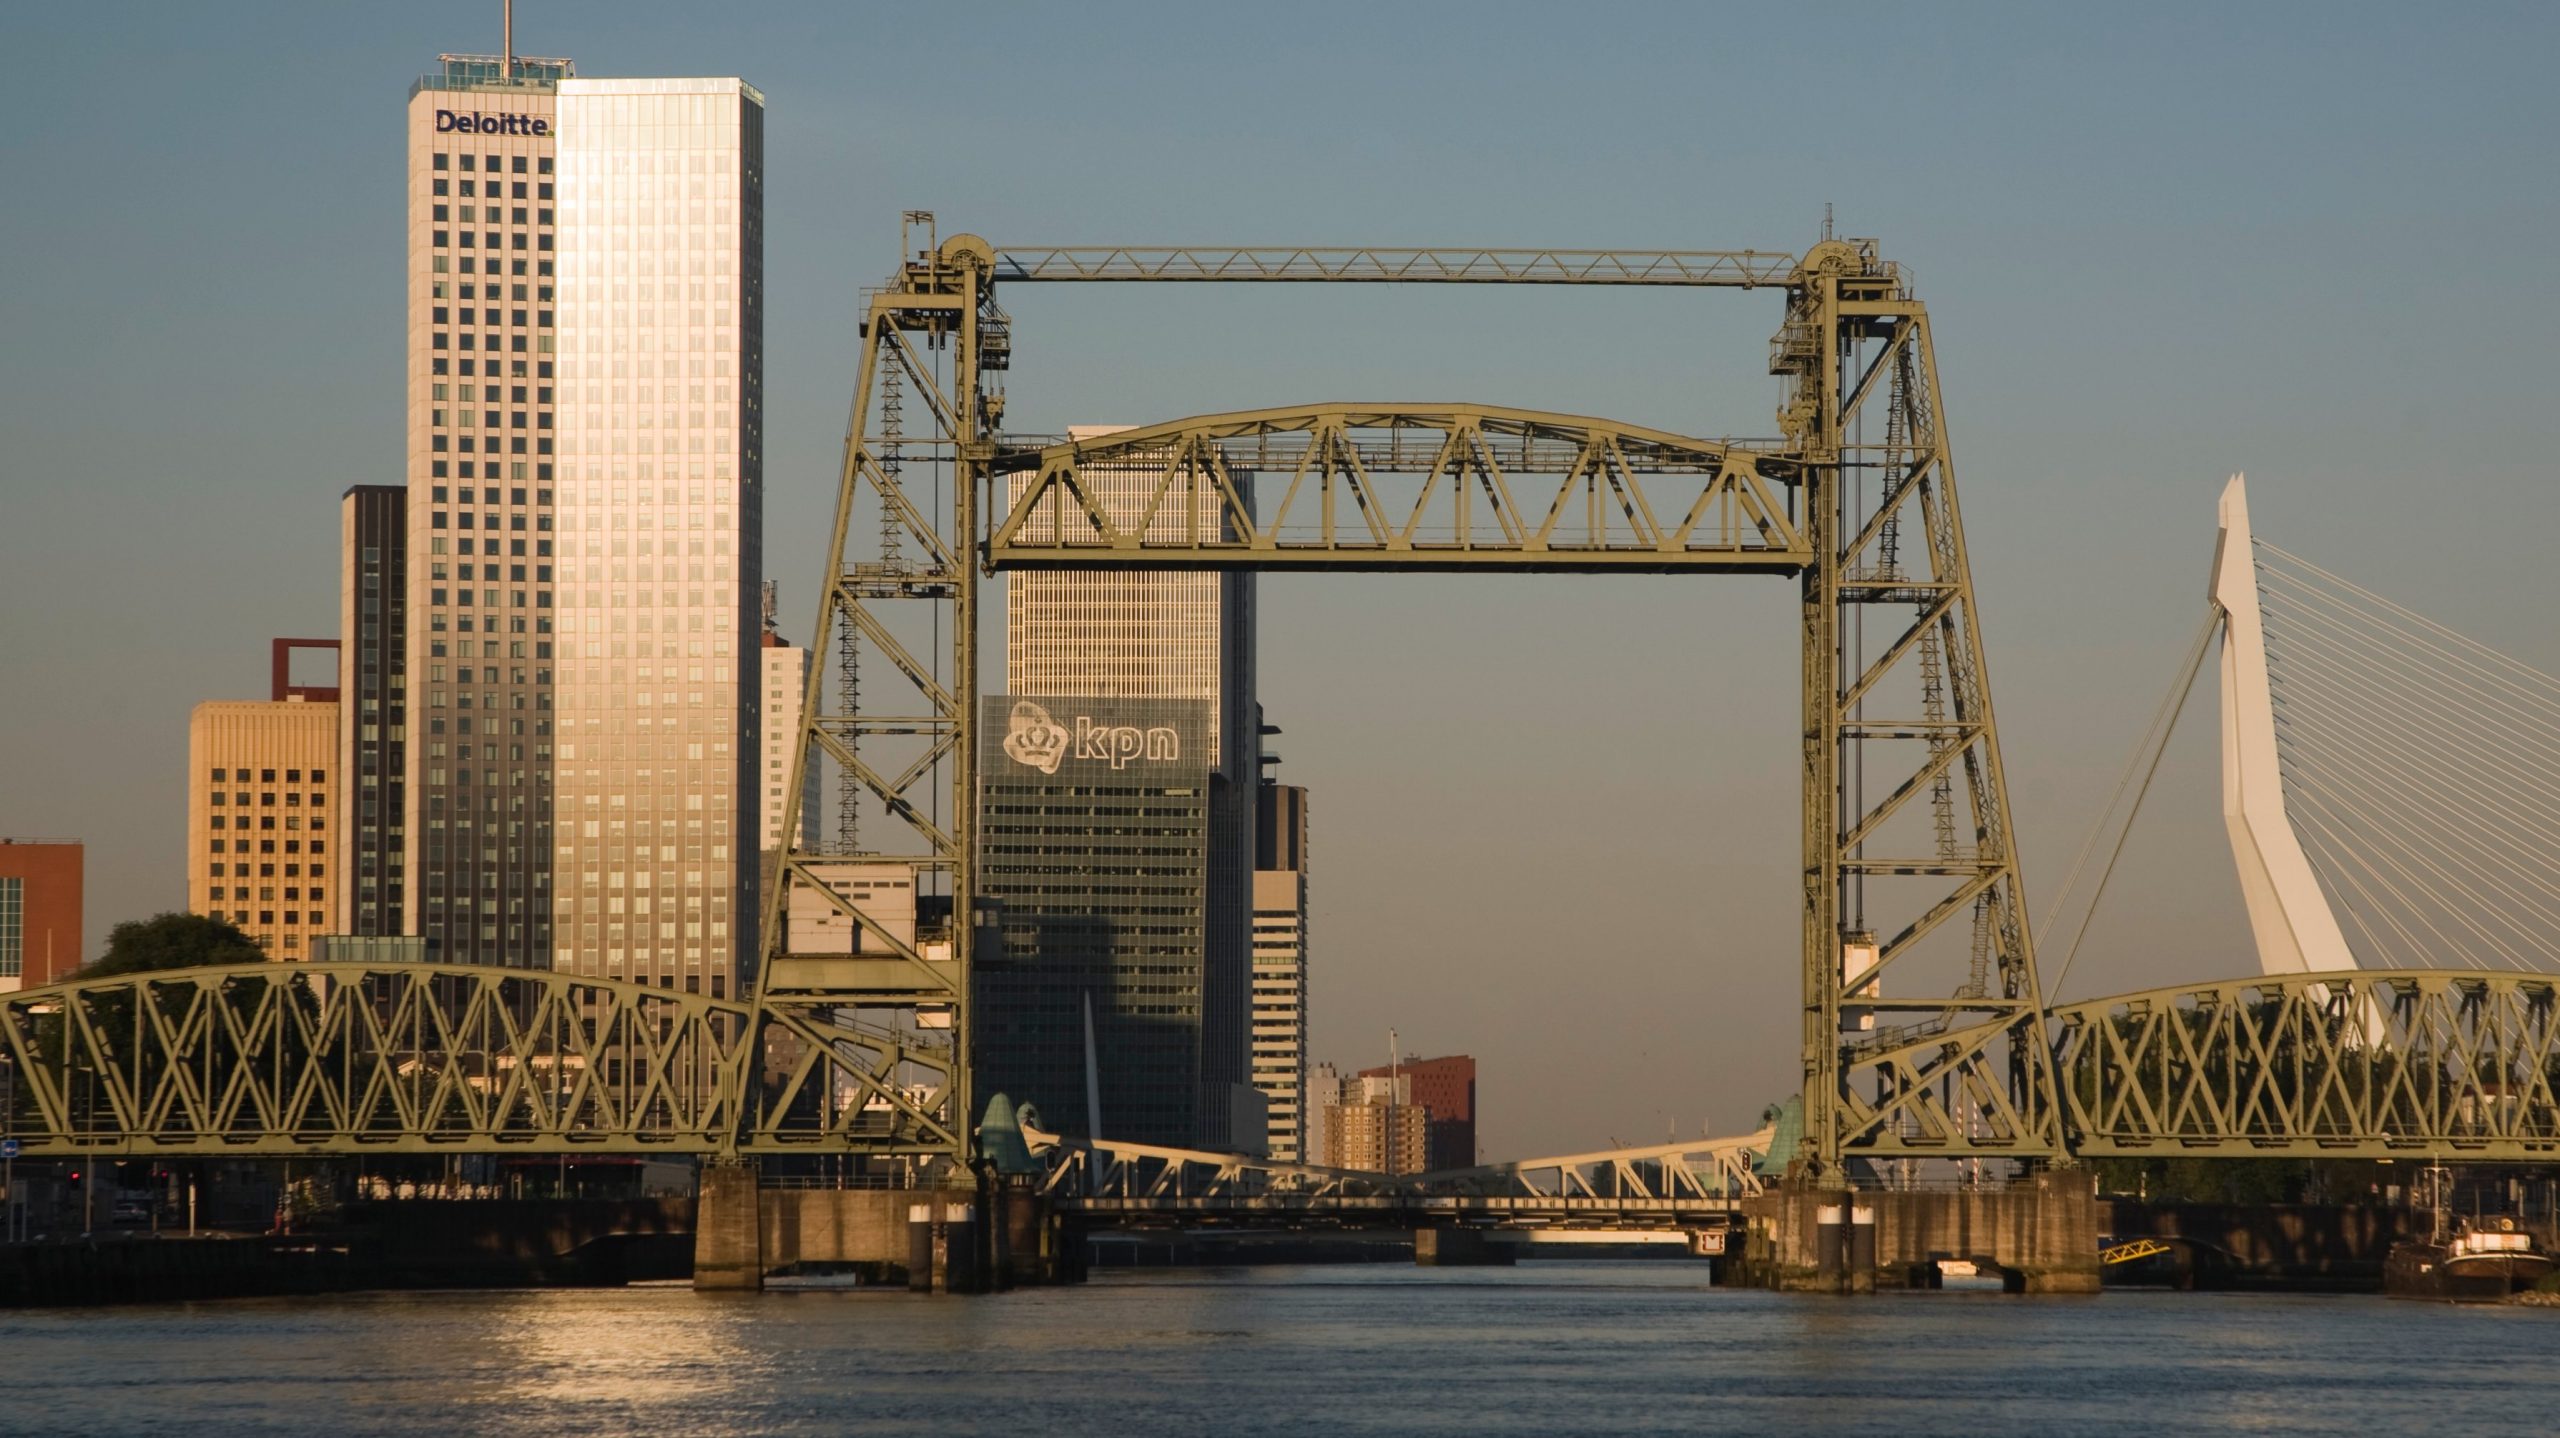 Controvérsia. Em Roterdão, uma ponte histórica vai ser desmantelada para o iate de Jeff Bezos